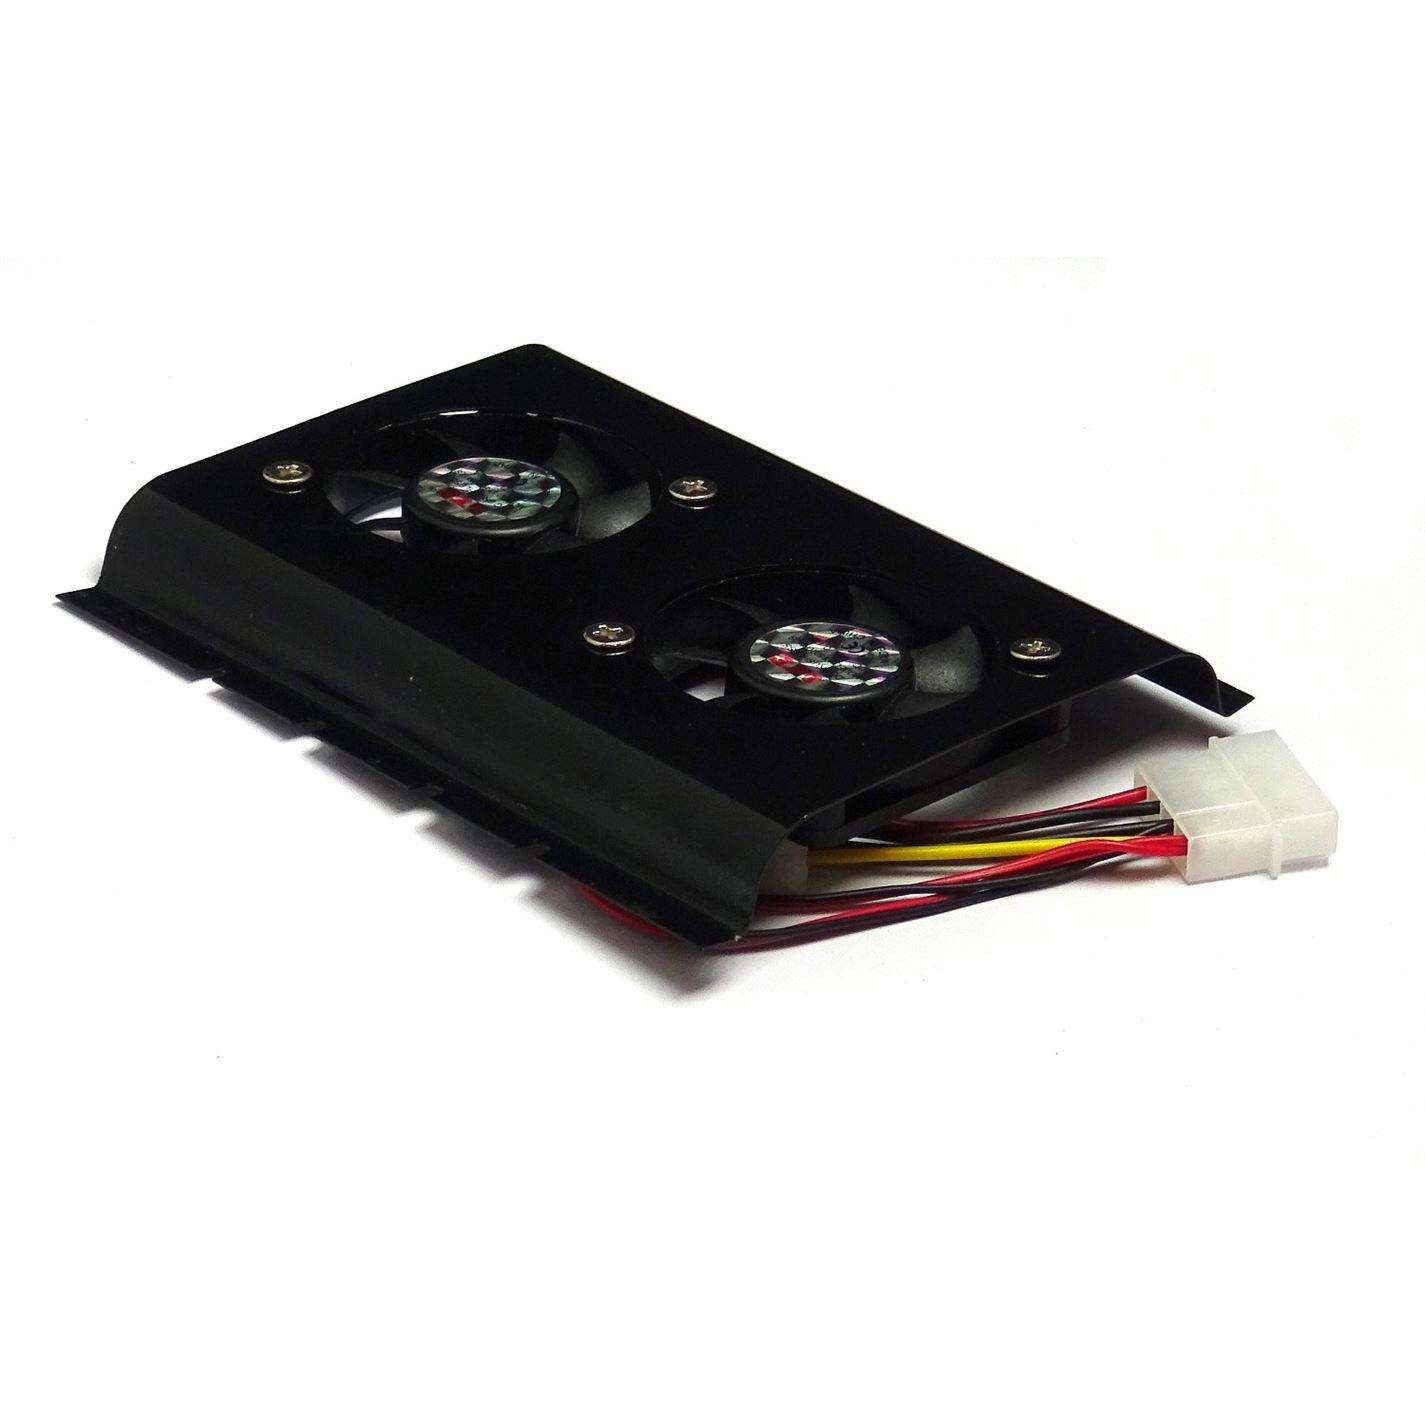 Black 3.5 SATA IDE Hard Disk Drive HDD 2 Fan Cooler for PC - UK Seller